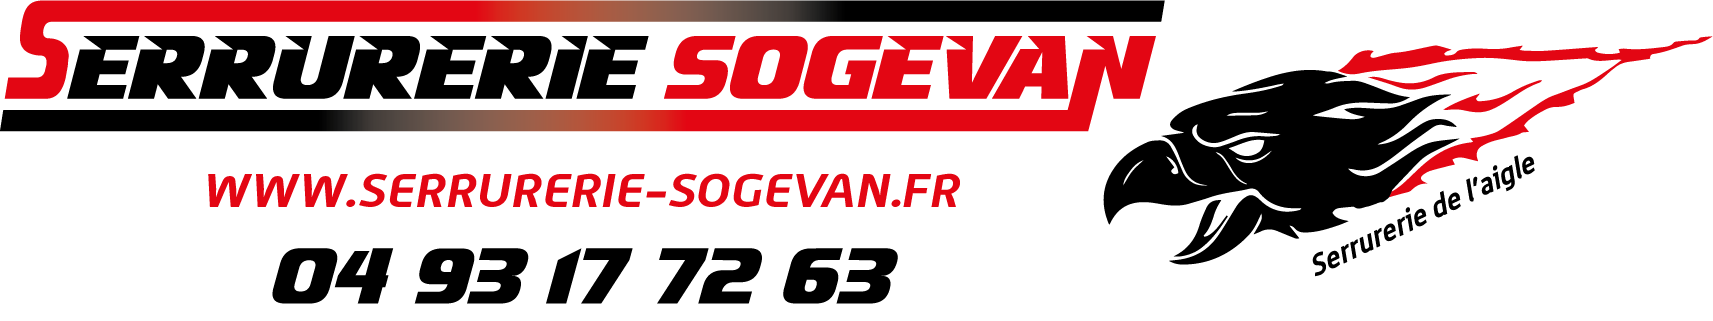 SerrurerieSogevan logo2022